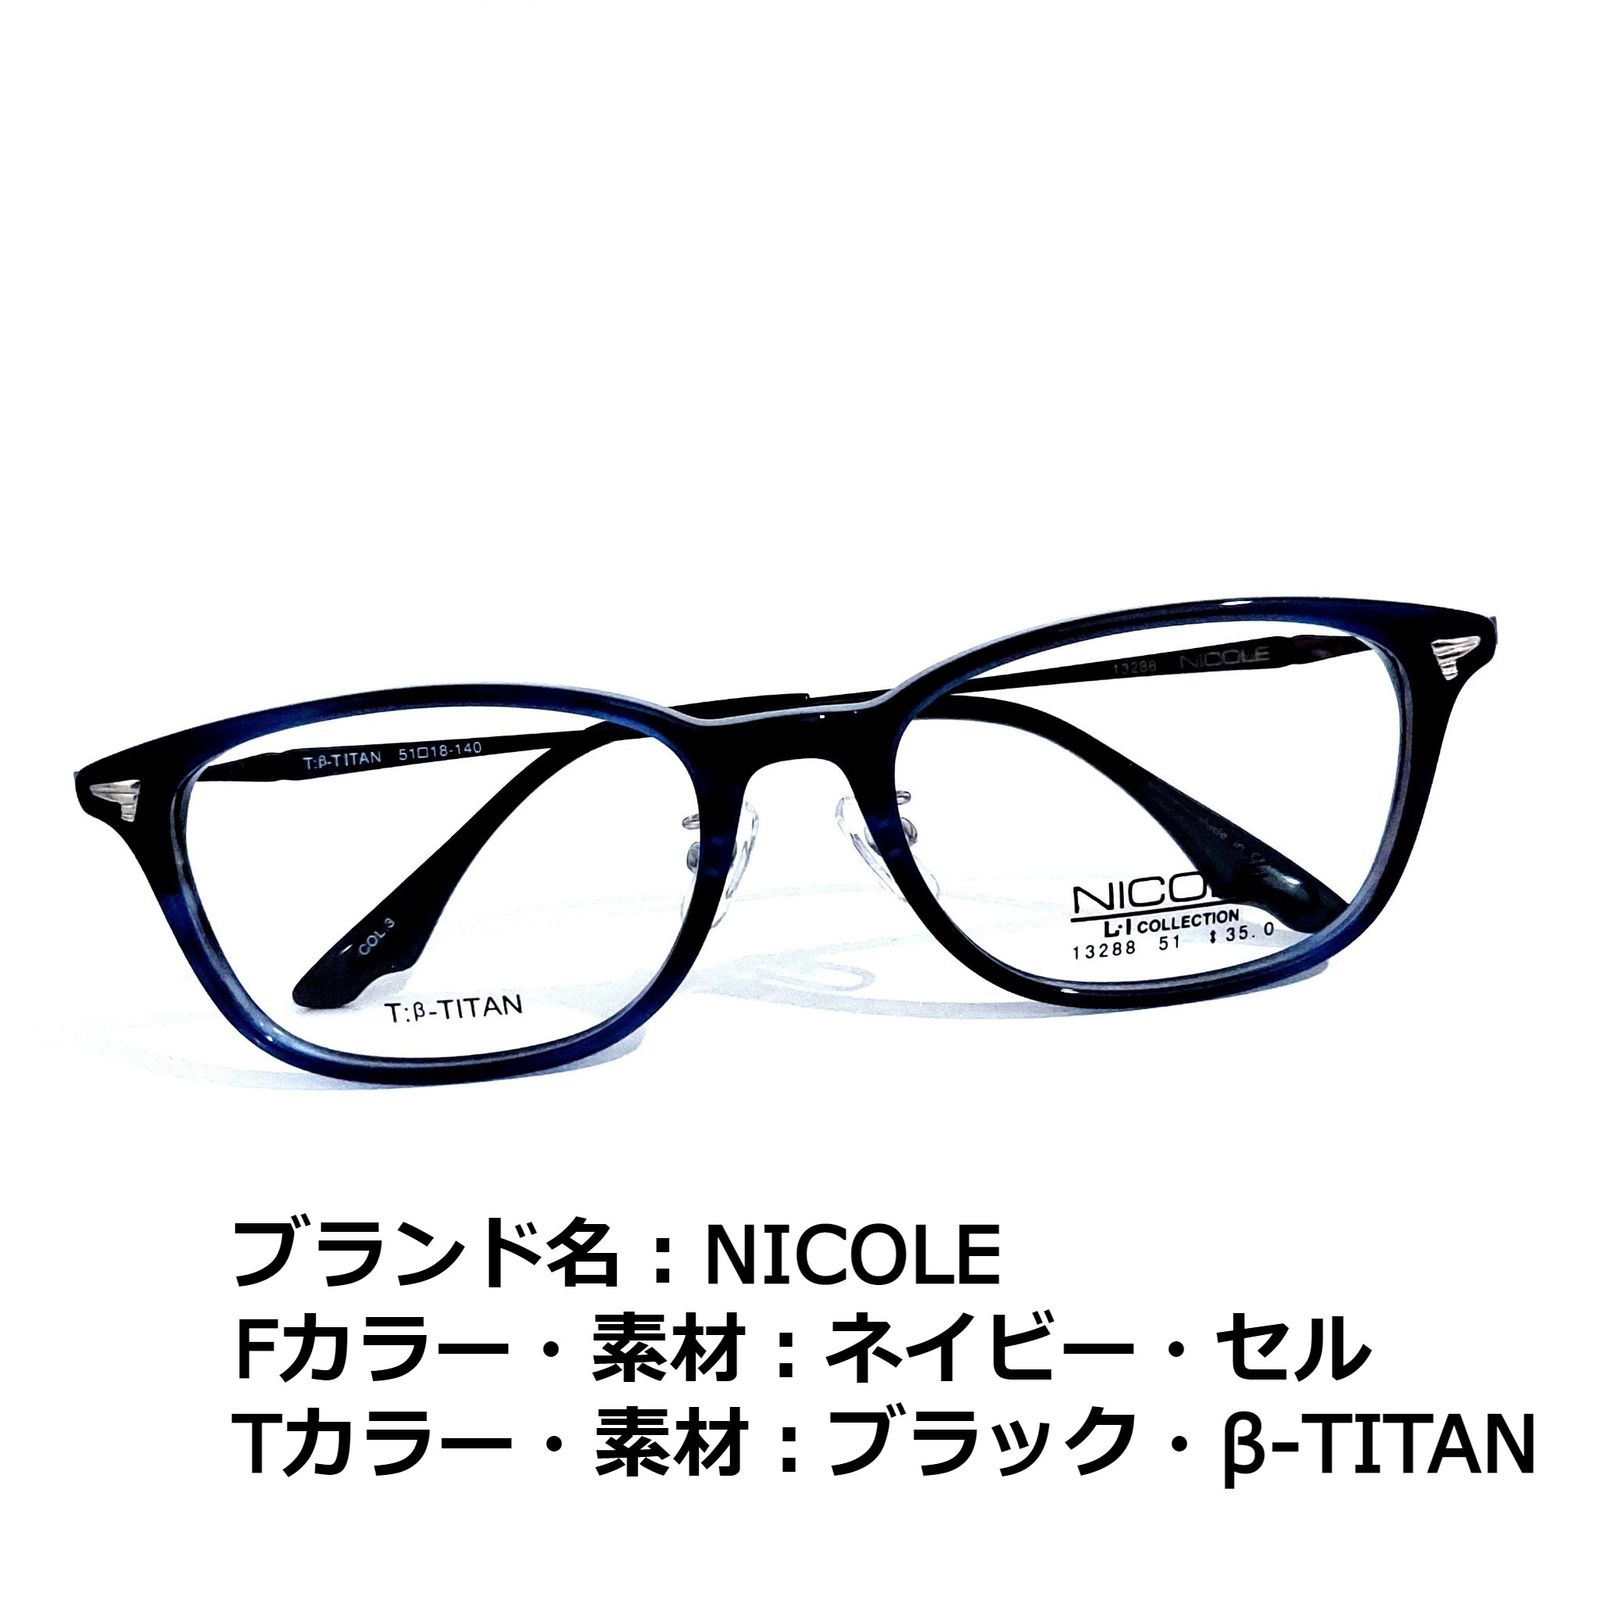 No.2253メガネ NICOLE COLINE【度数入り込み価格】 - starrvybzonline.com